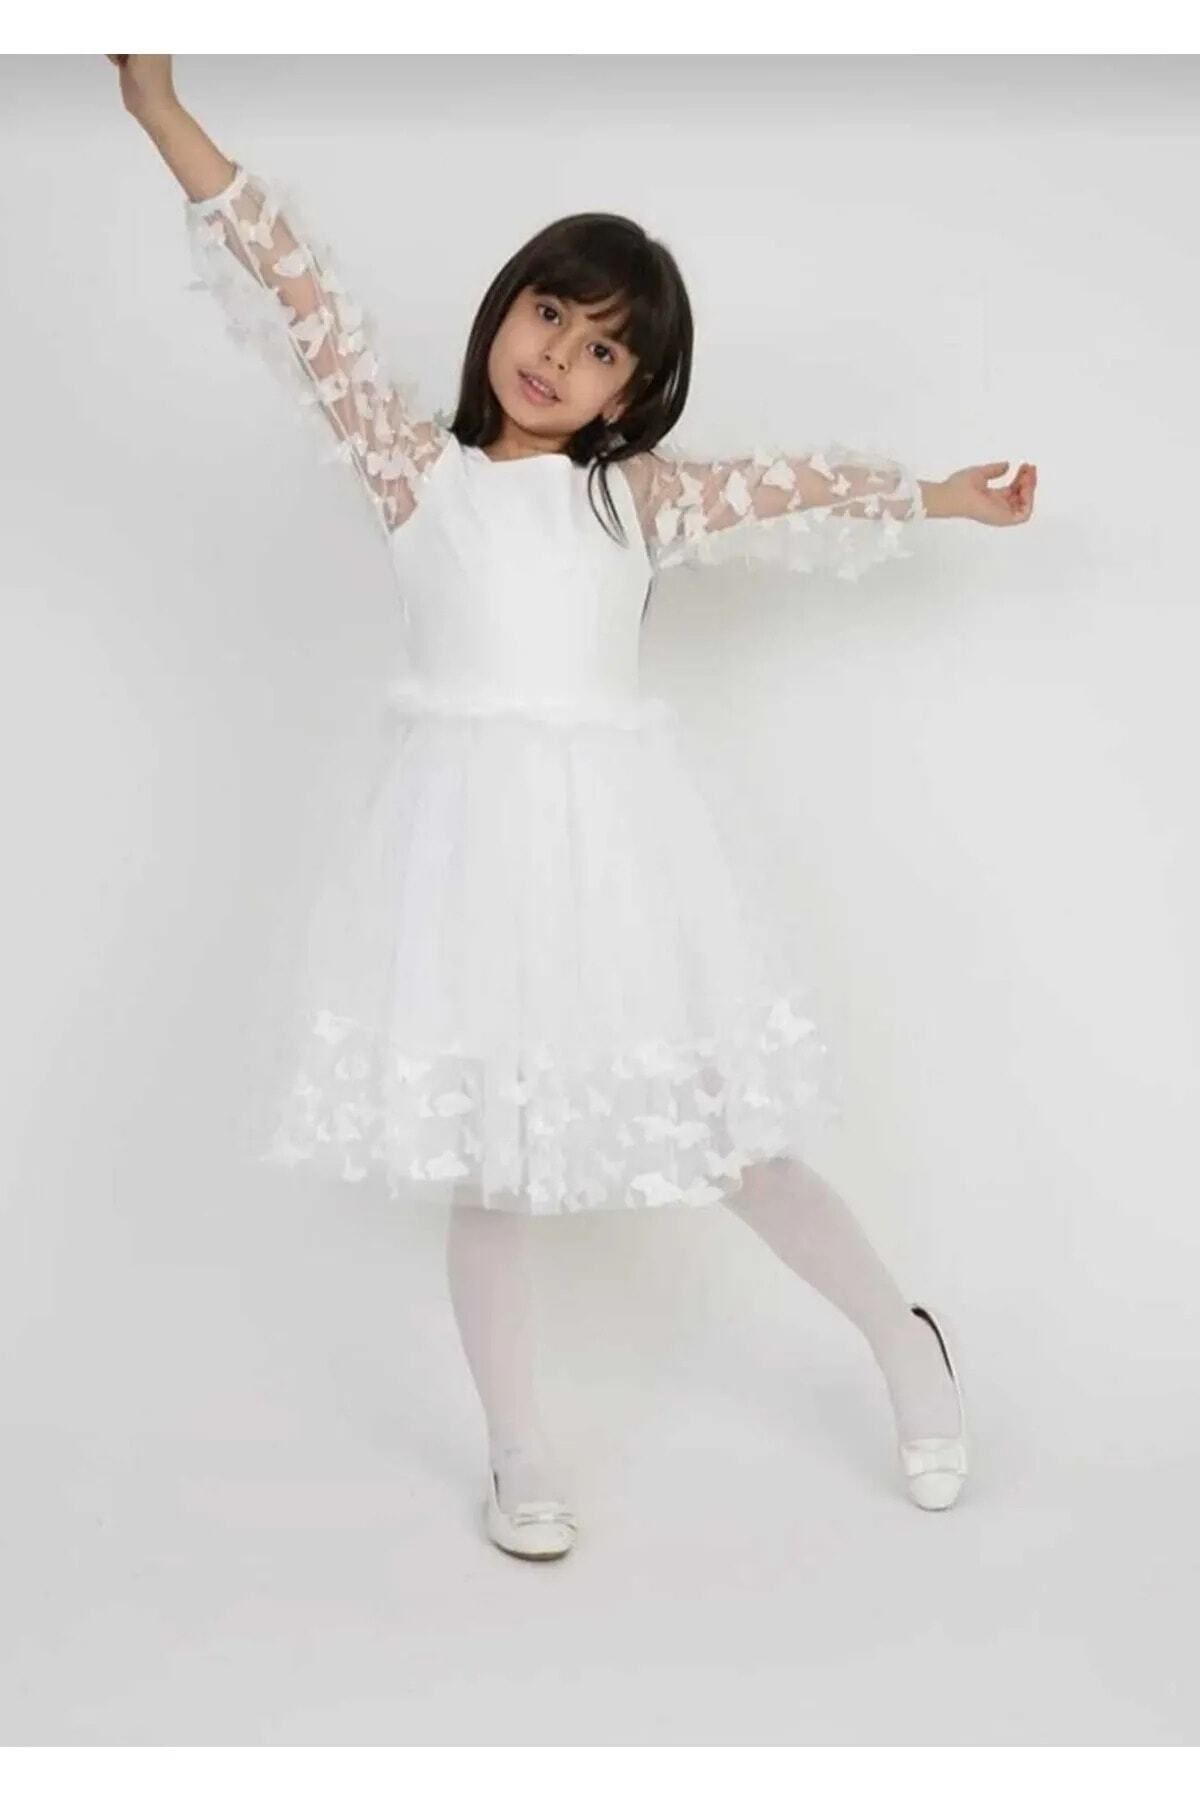 Nacar 23 Nisan Kız Çocuk Gösteri Kıyafeti Elbise Takım 0-24